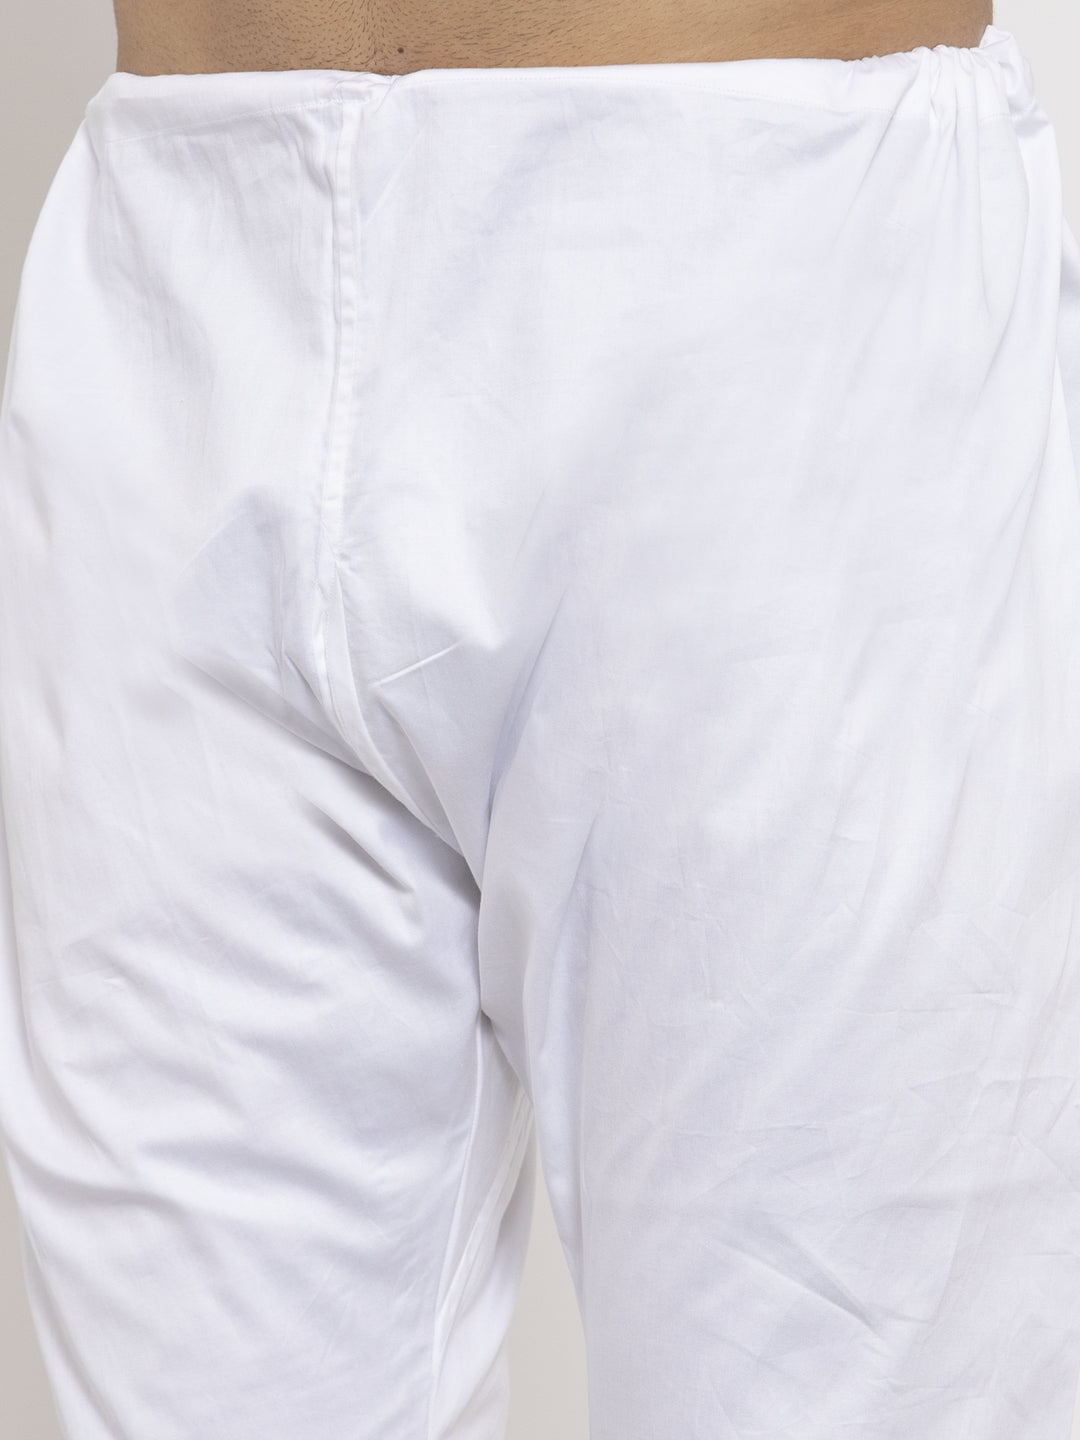 KLOTTHE White Cotton Solid Pyjama